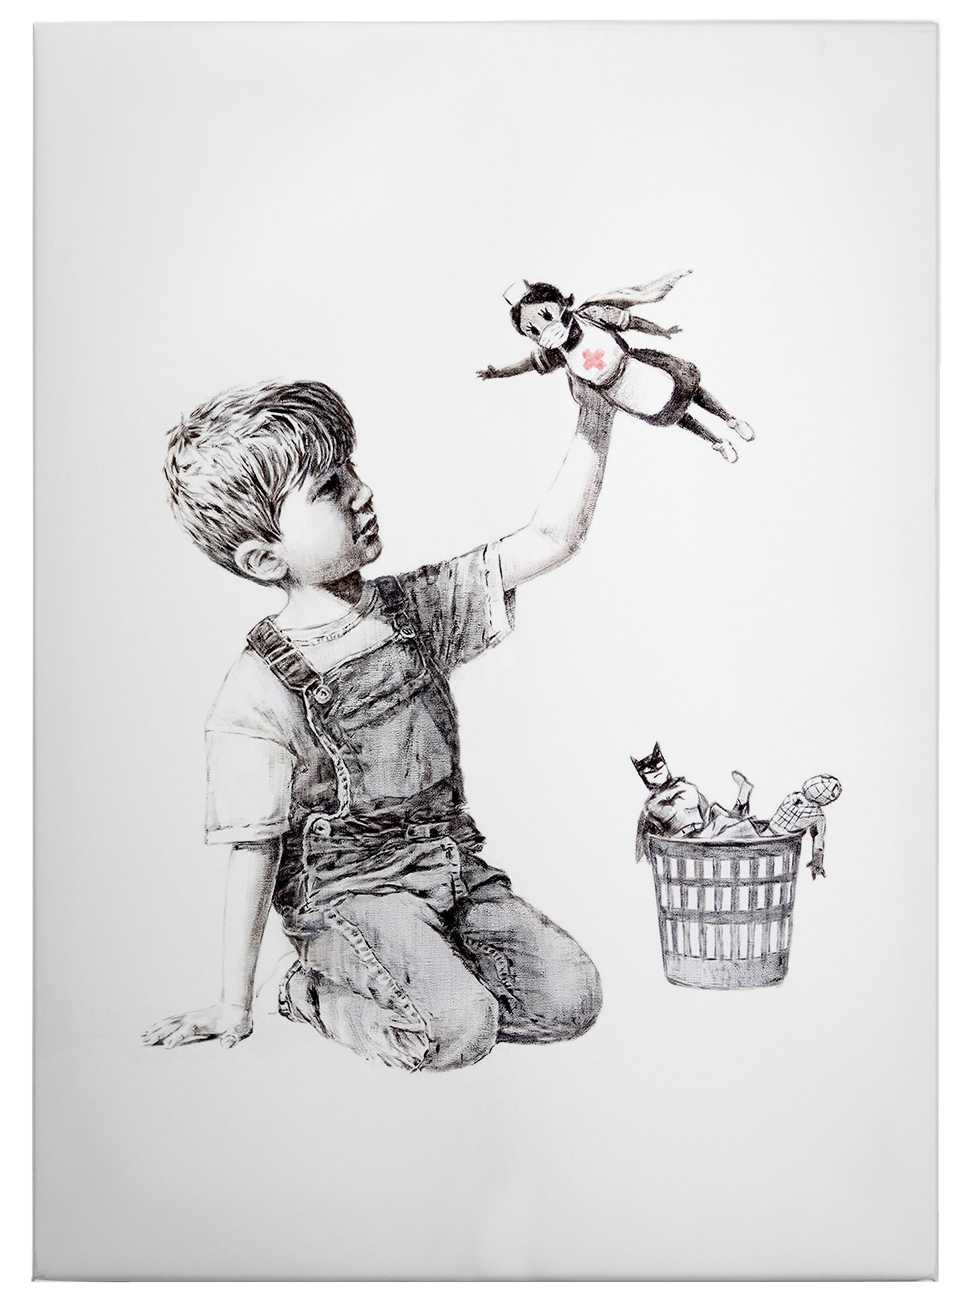             Cuadro Banksy "Real Hero" - 0,50 m x 0,70 m
        